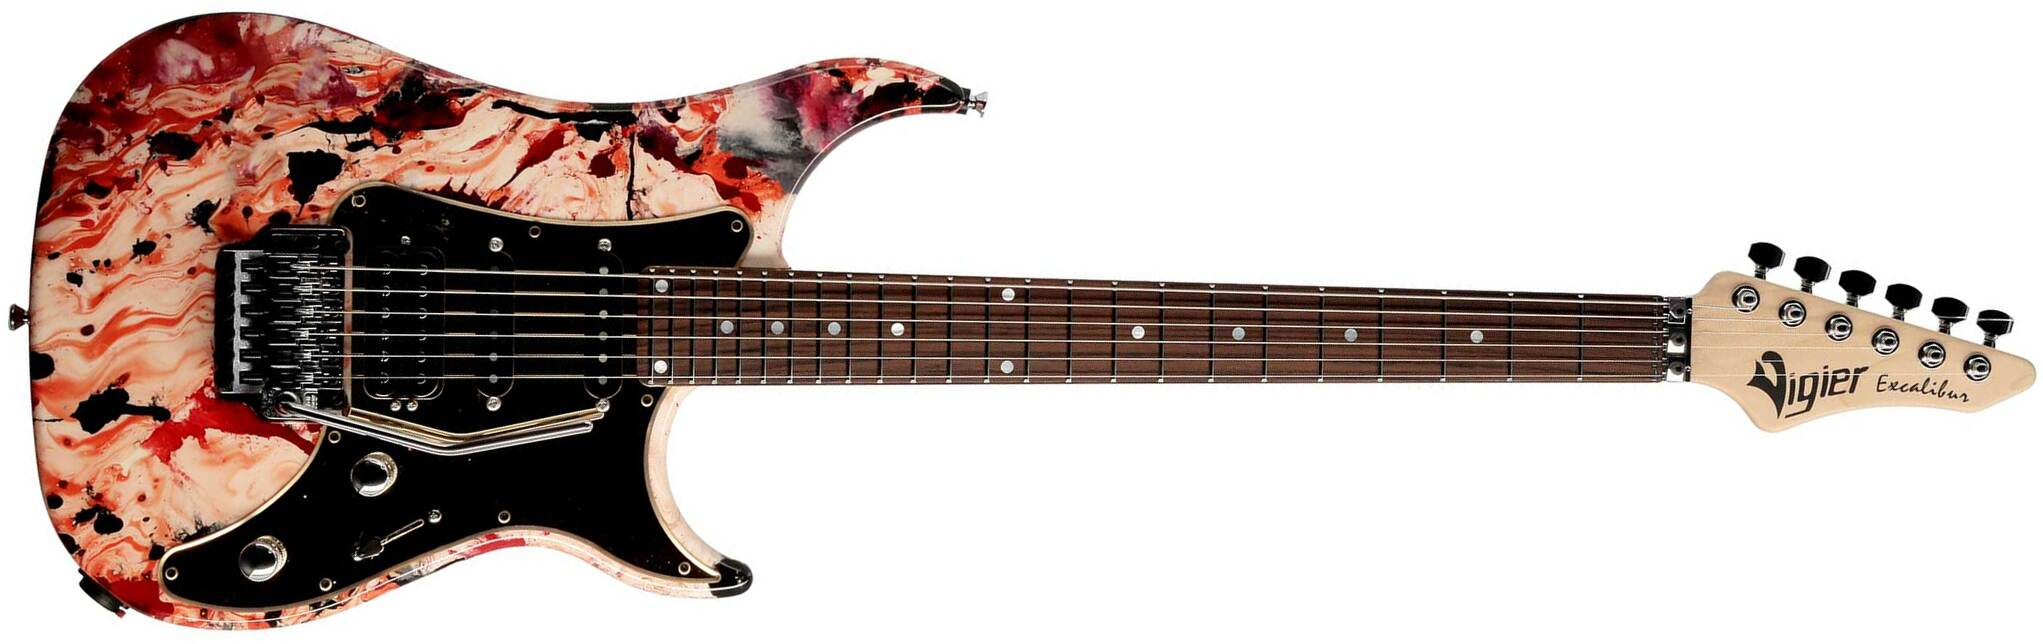 Vigier Excalibur Original Hss Fr Rw - Rock Art White/red/black - Elektrische gitaar in Str-vorm - Main picture